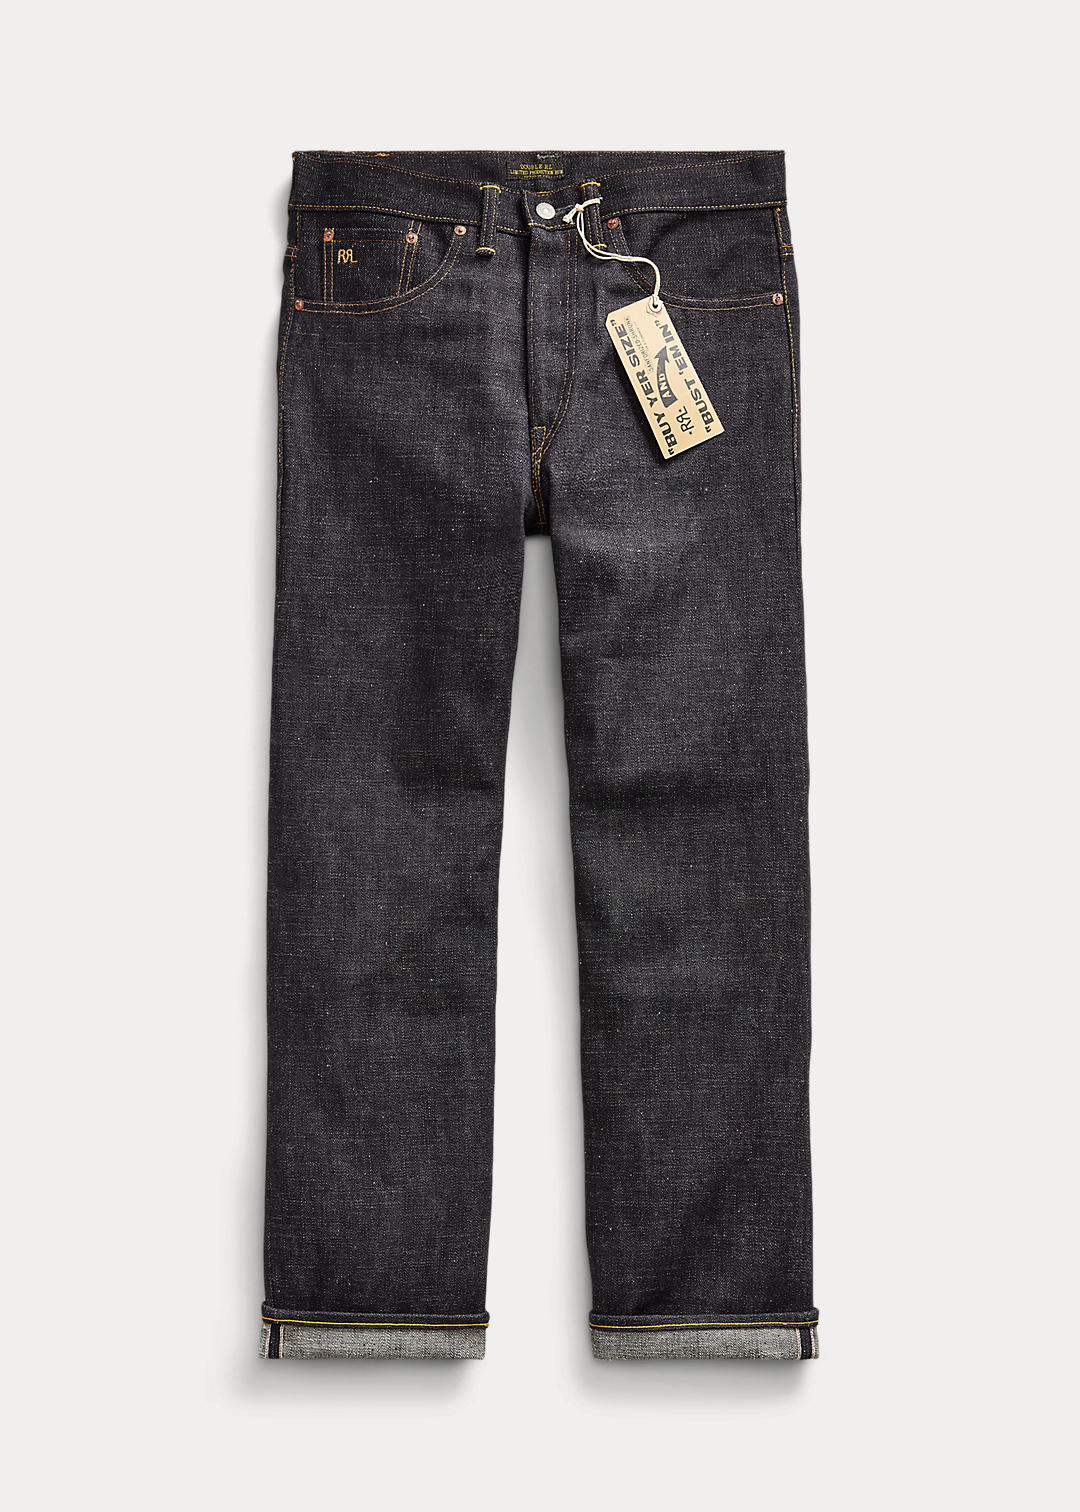 Limited Edition Vintage 5 Pocket Jean